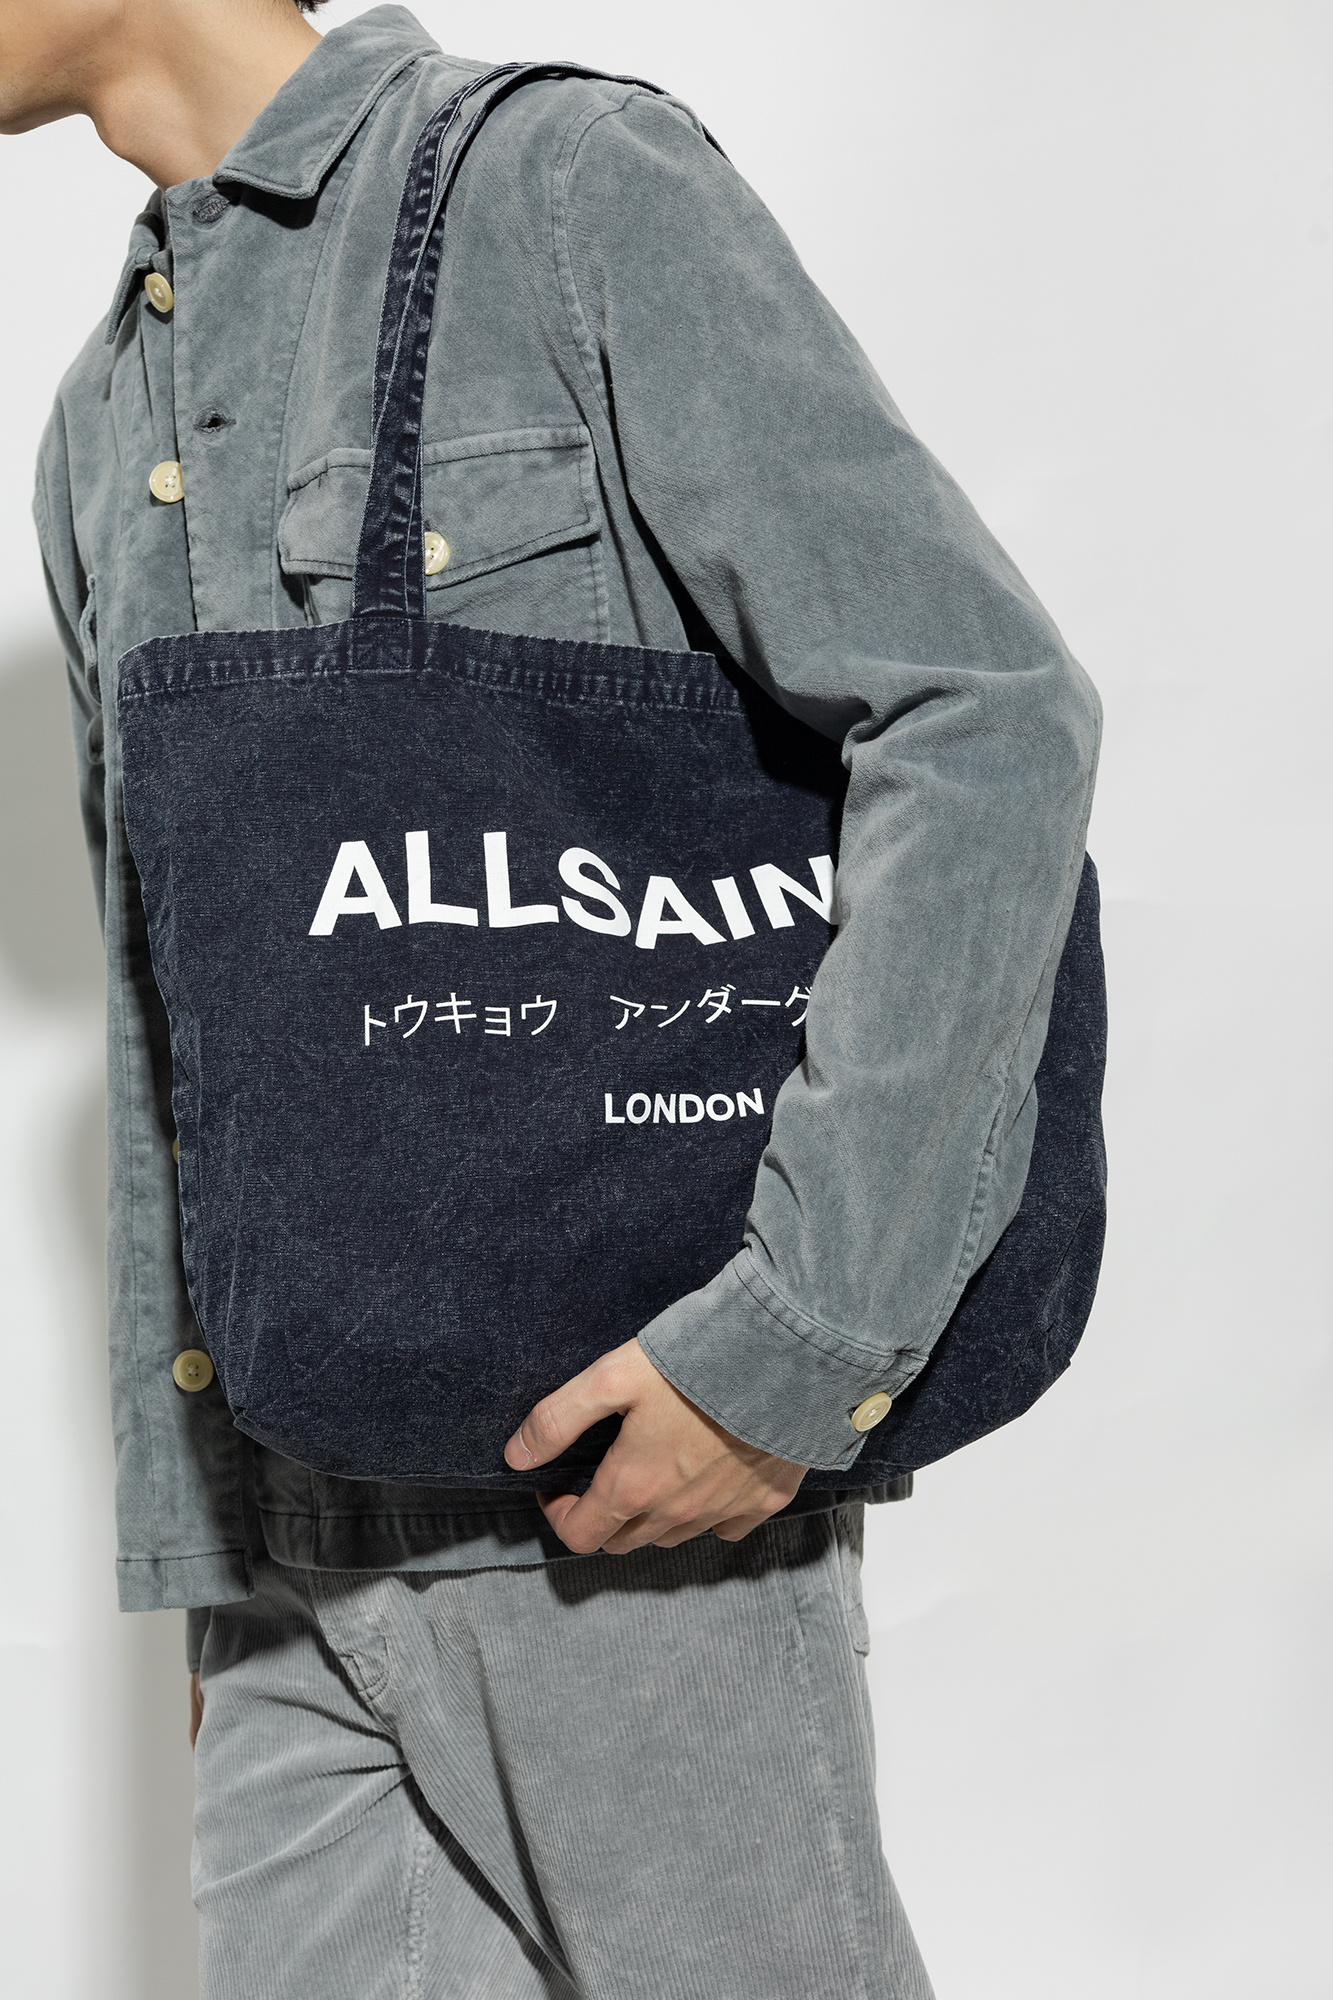 AllSaints ‘Underground’ shopper Schwarz bag